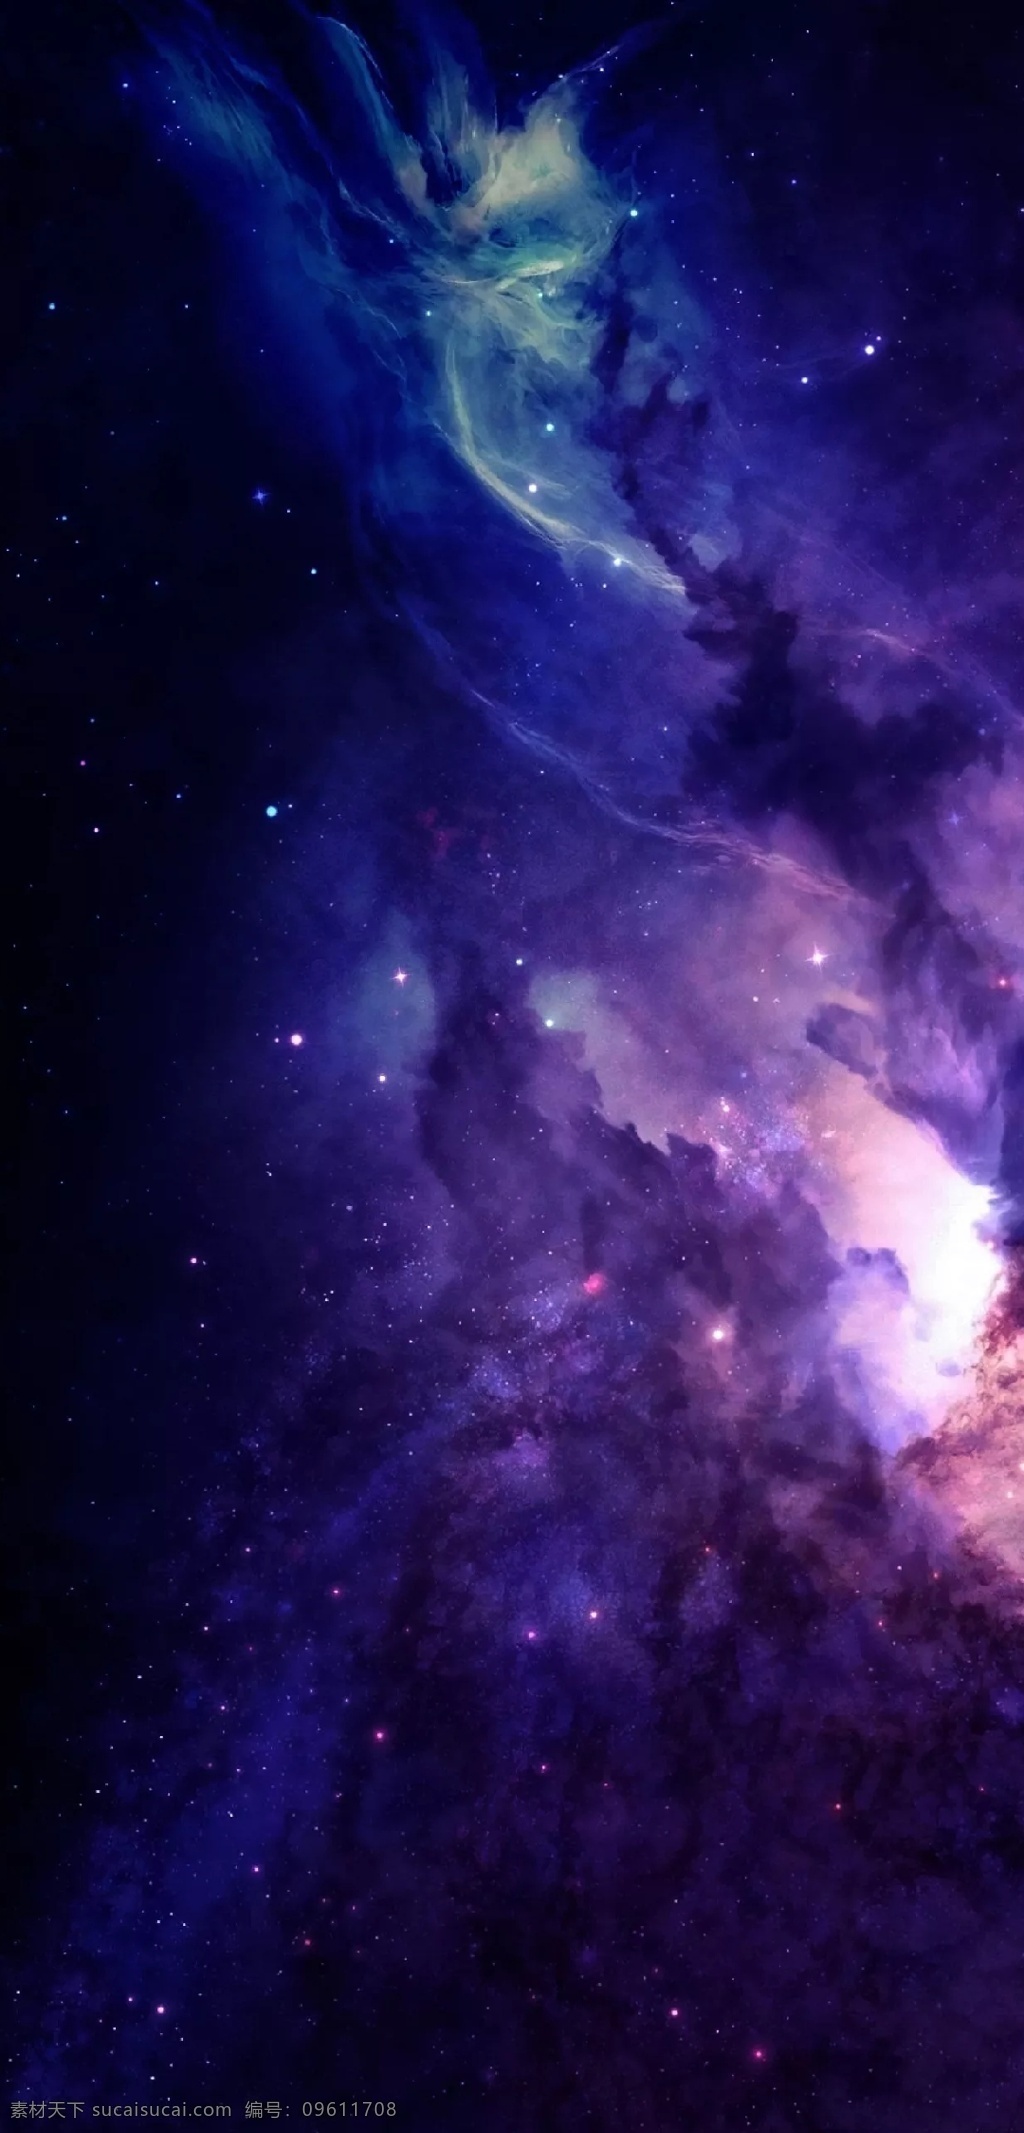 紫光 绿 光 宇宙 银河 手机高清桌布 星空 星星 星系 星云 亮体 亮光 本星系群 天文 宇宙星系 浩瀚 星团 滤光 绿光 手机 高清 桌布